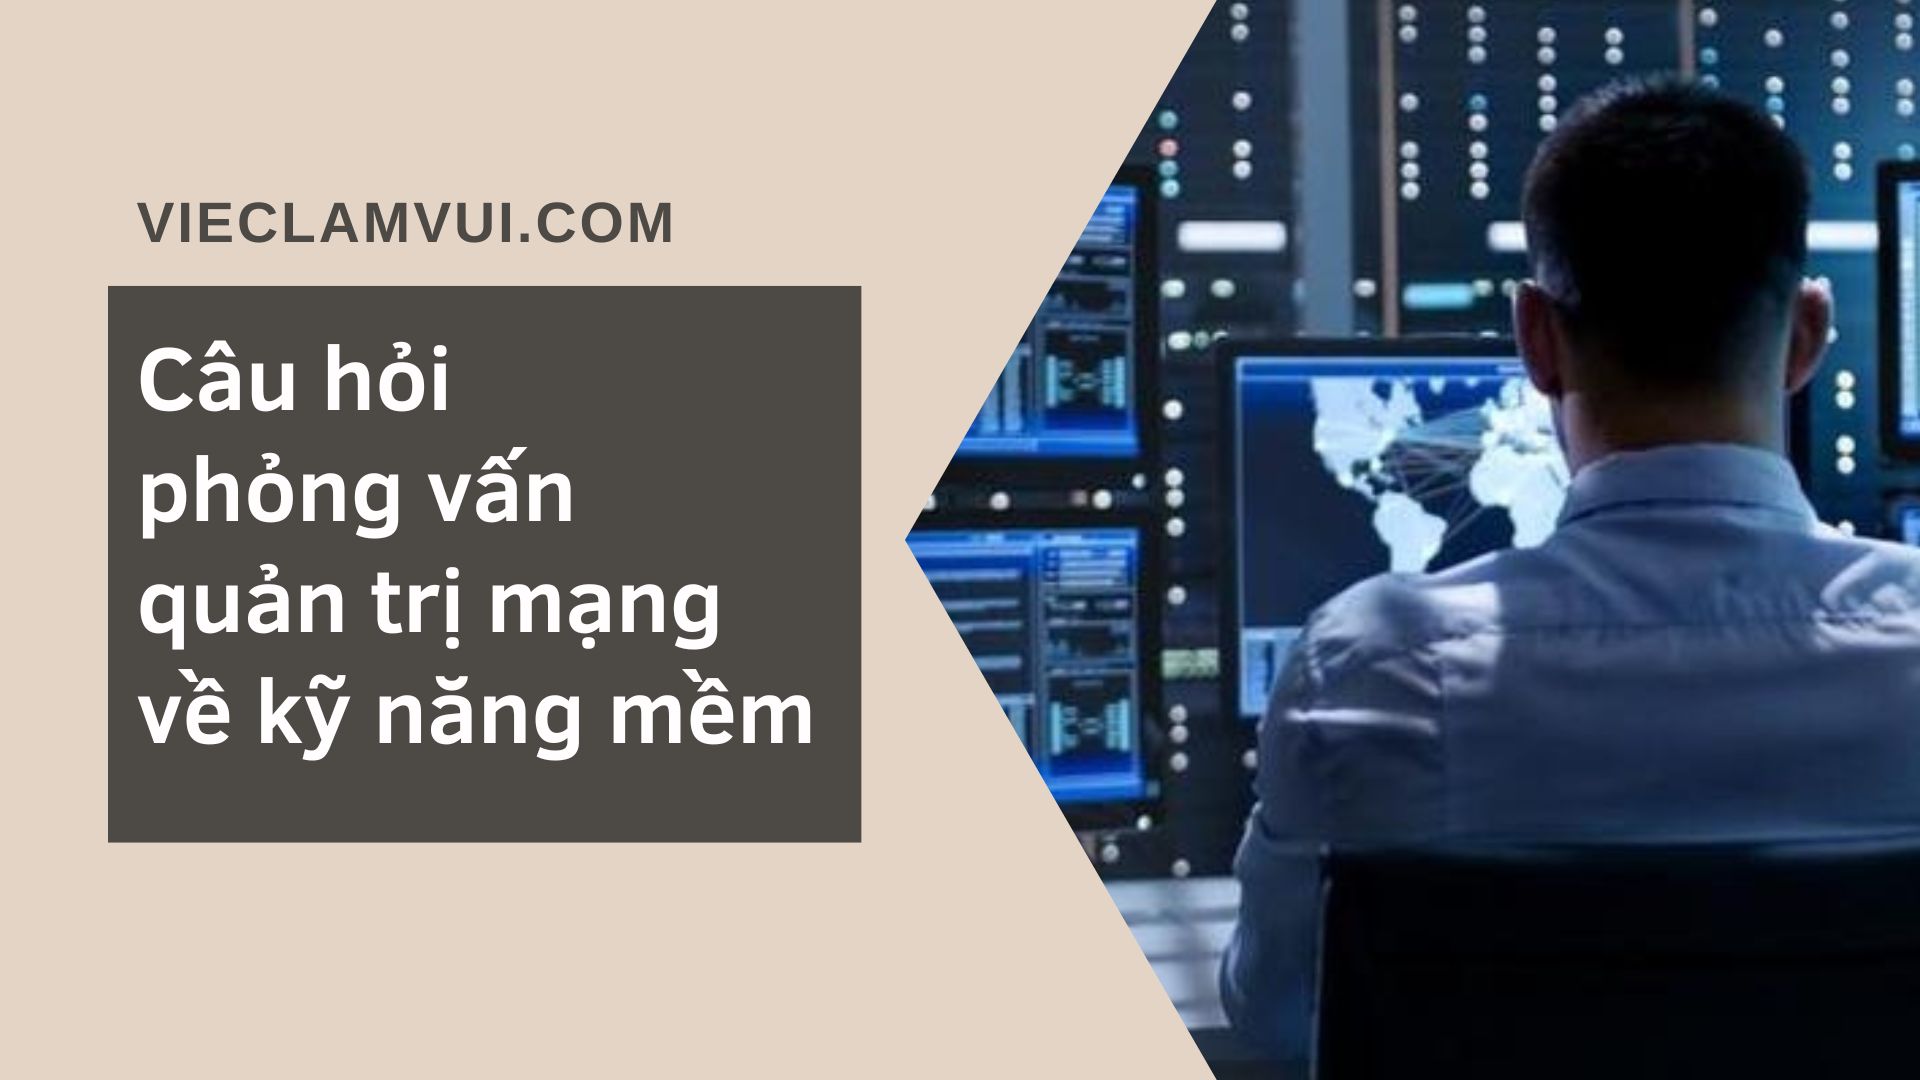 Câu hỏi phỏng vấn quản trị mạng về kỹ năng mềm - ViecLamVui